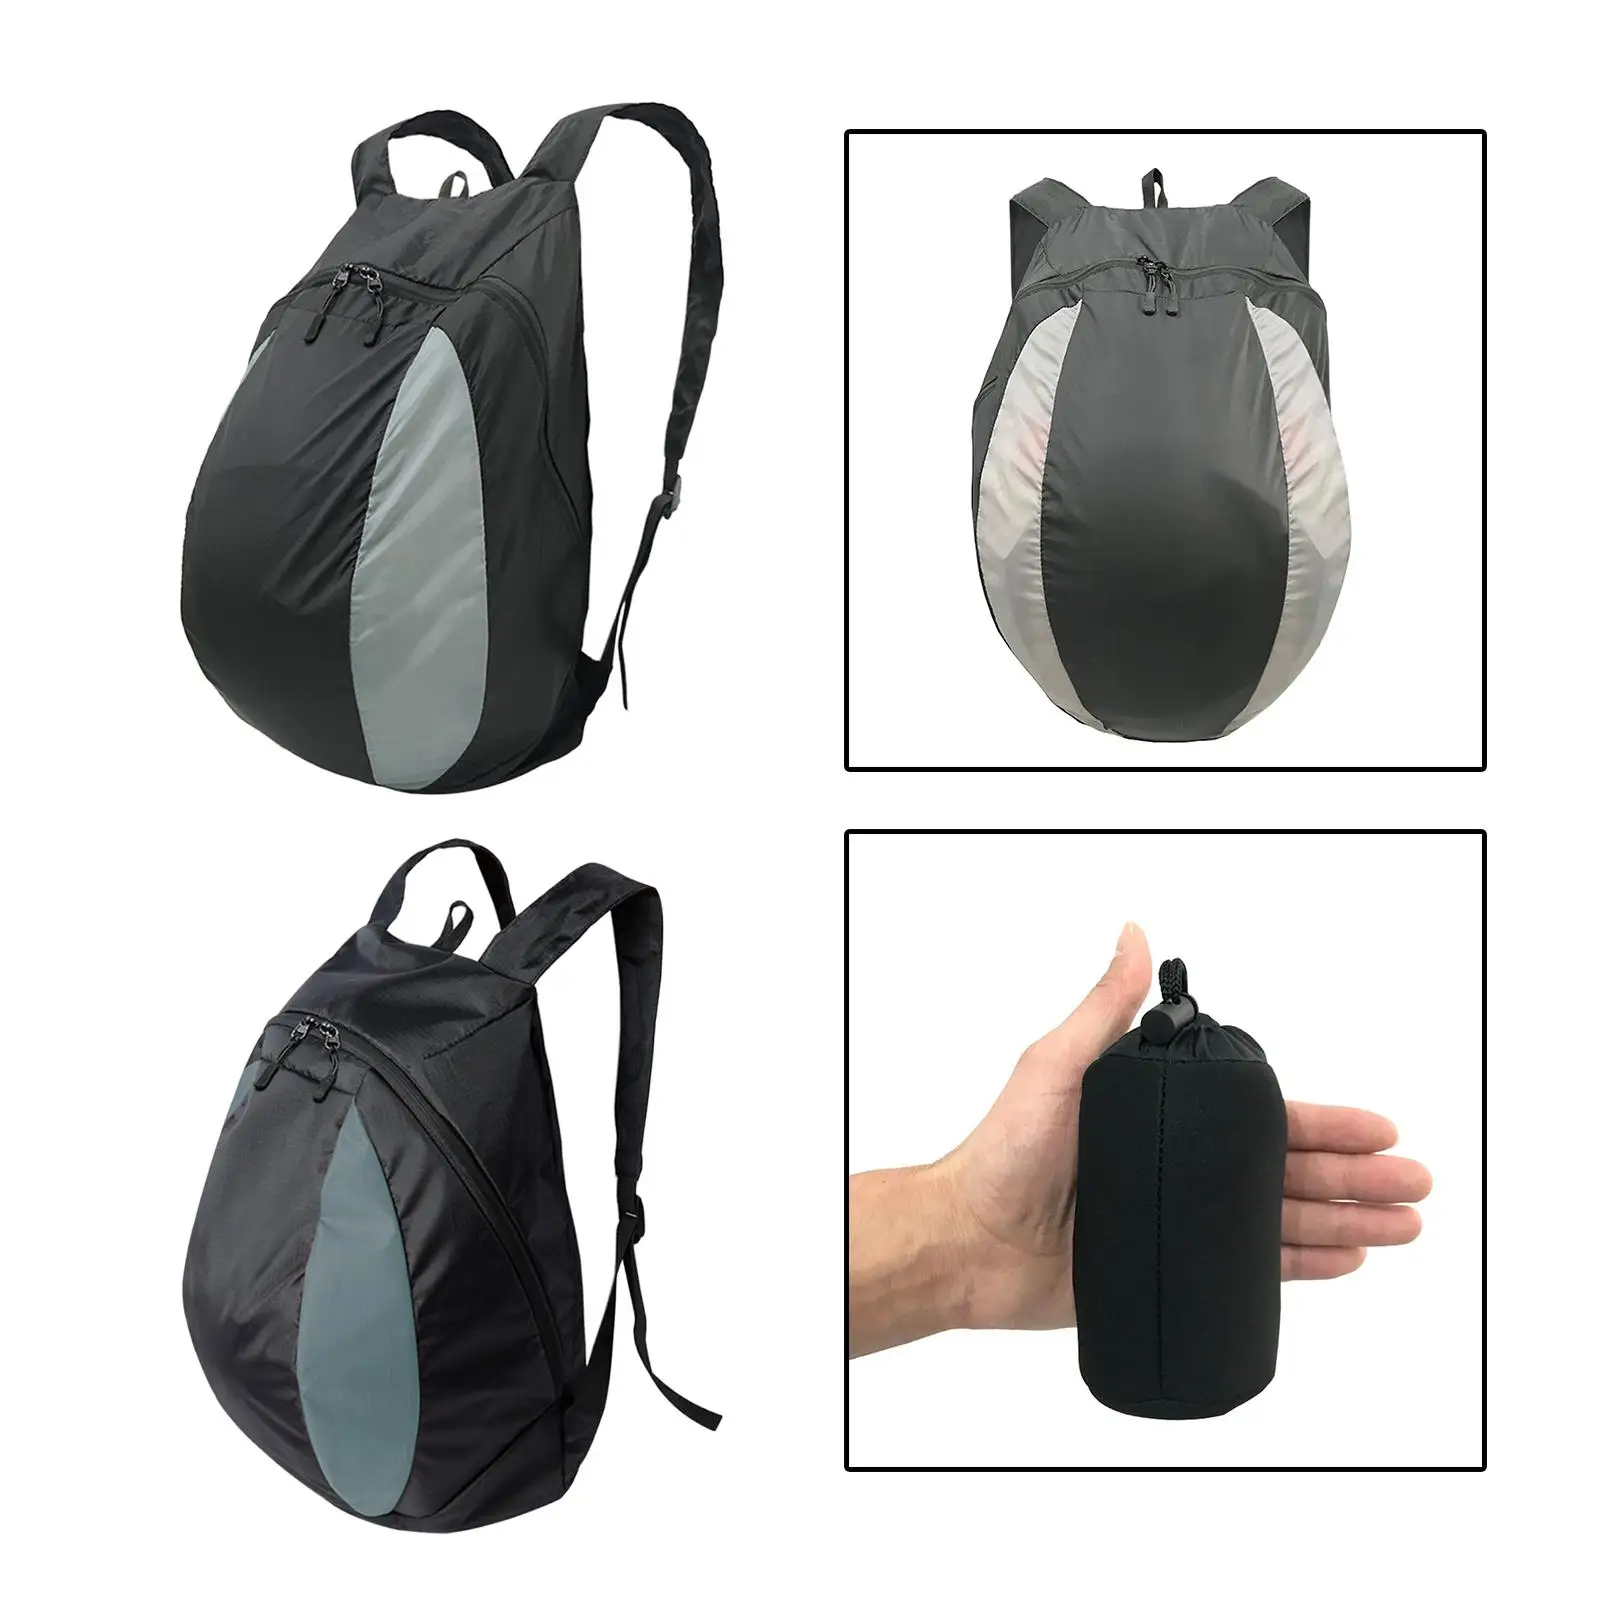 Basketball Shoulder Bag Motorcycle Backpack Bag for Clothes